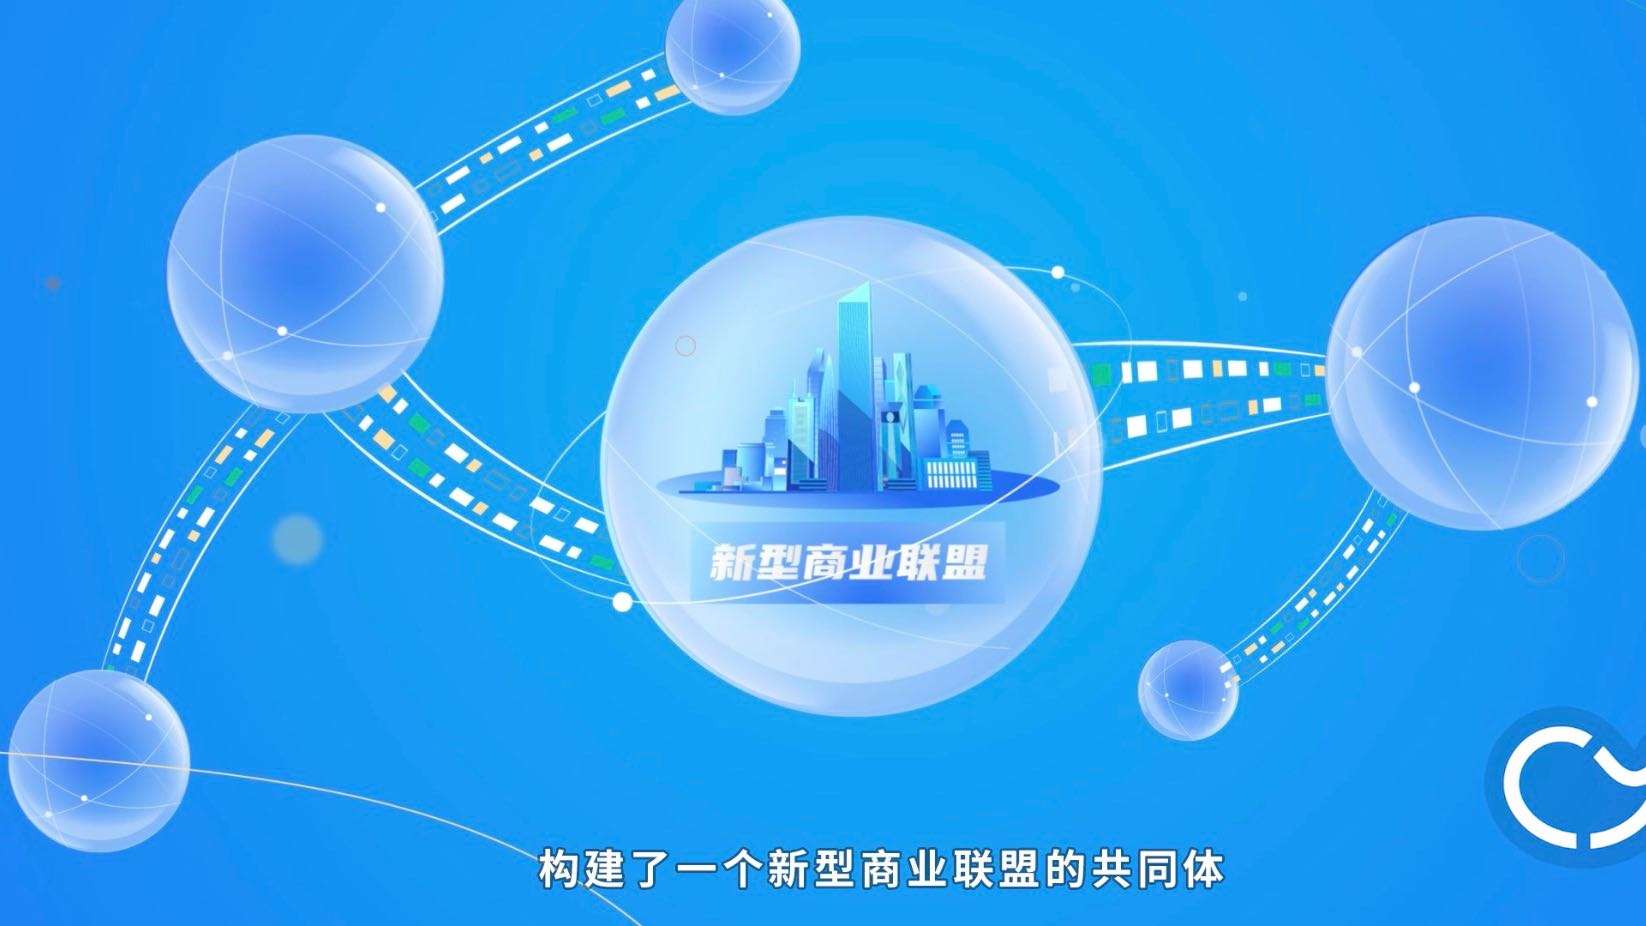 华润三九商道2.0发布会mg动画视频、科技风mg动画